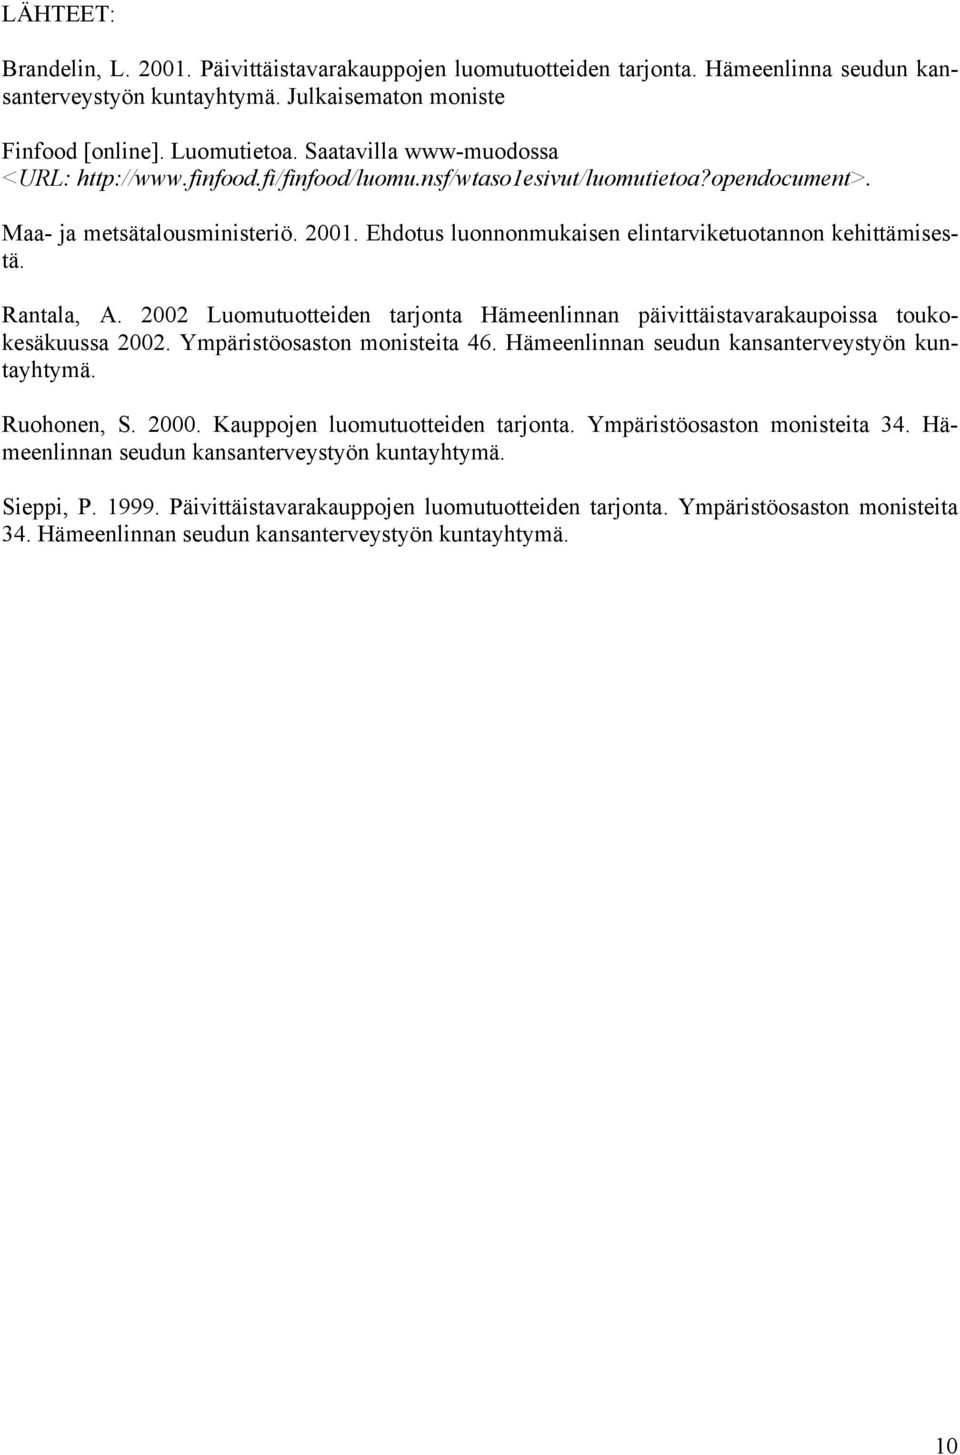 Ehdotus luonnonmukaisen elintarviketuotannon kehittämisestä. Rantala, A. 2002 Luomutuotteiden tarjonta Hämeenlinnan päivittäistavarakaupoissa toukokesäkuussa 2002. Ympäristöosaston monisteita 46.